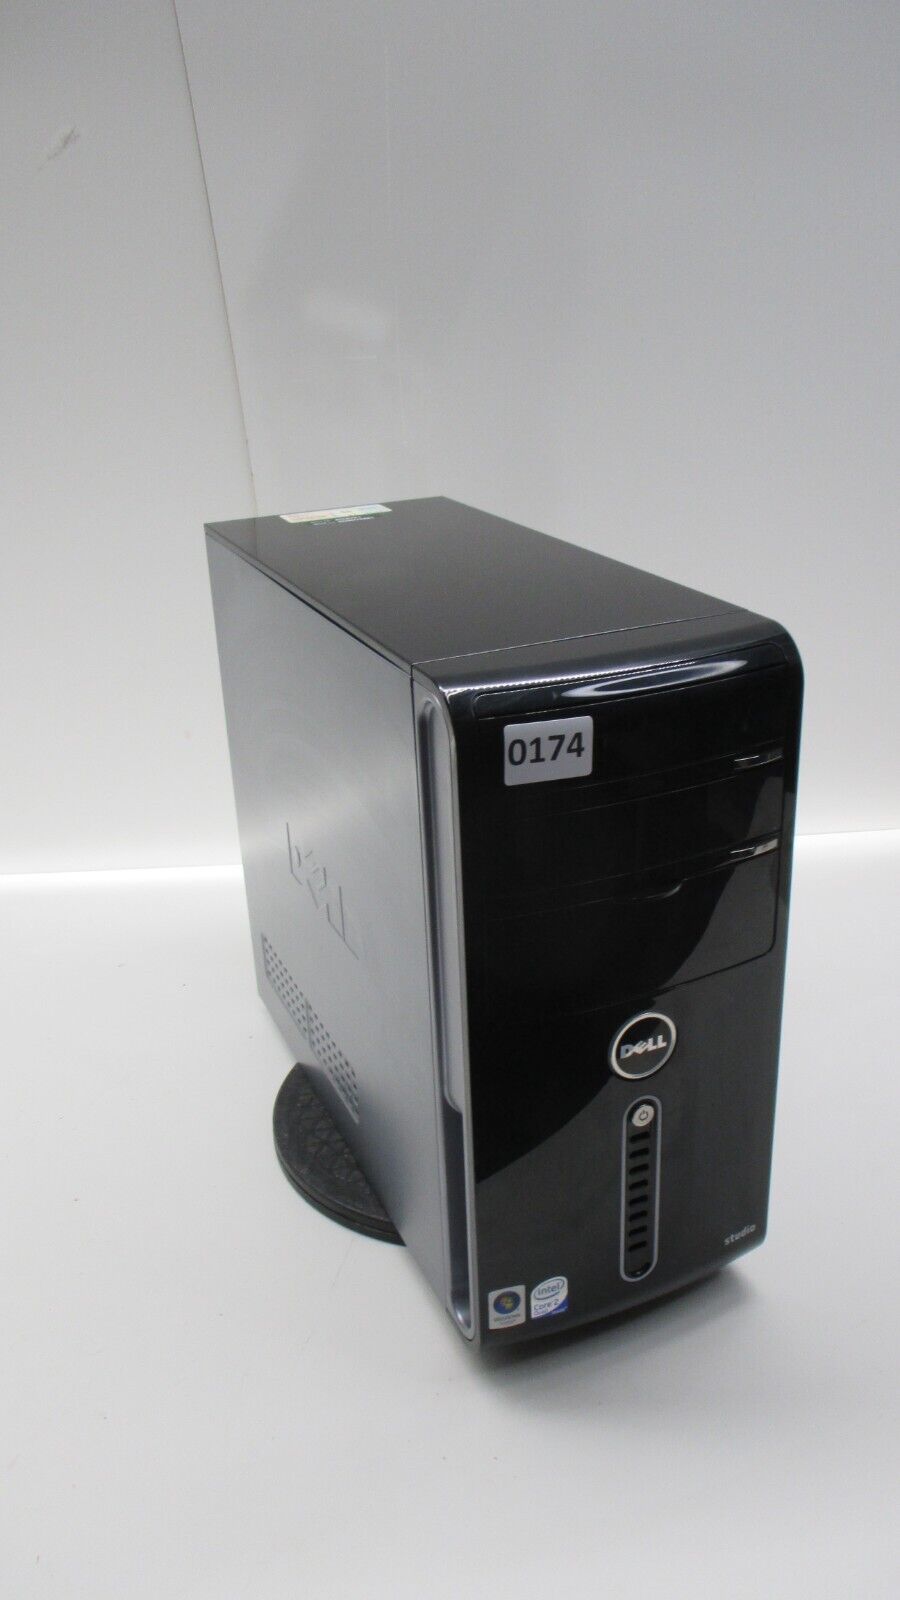 Dell Studio 540 Desktop Computer Intel Core 2 Quad Q8200 4GB Ram No HDD